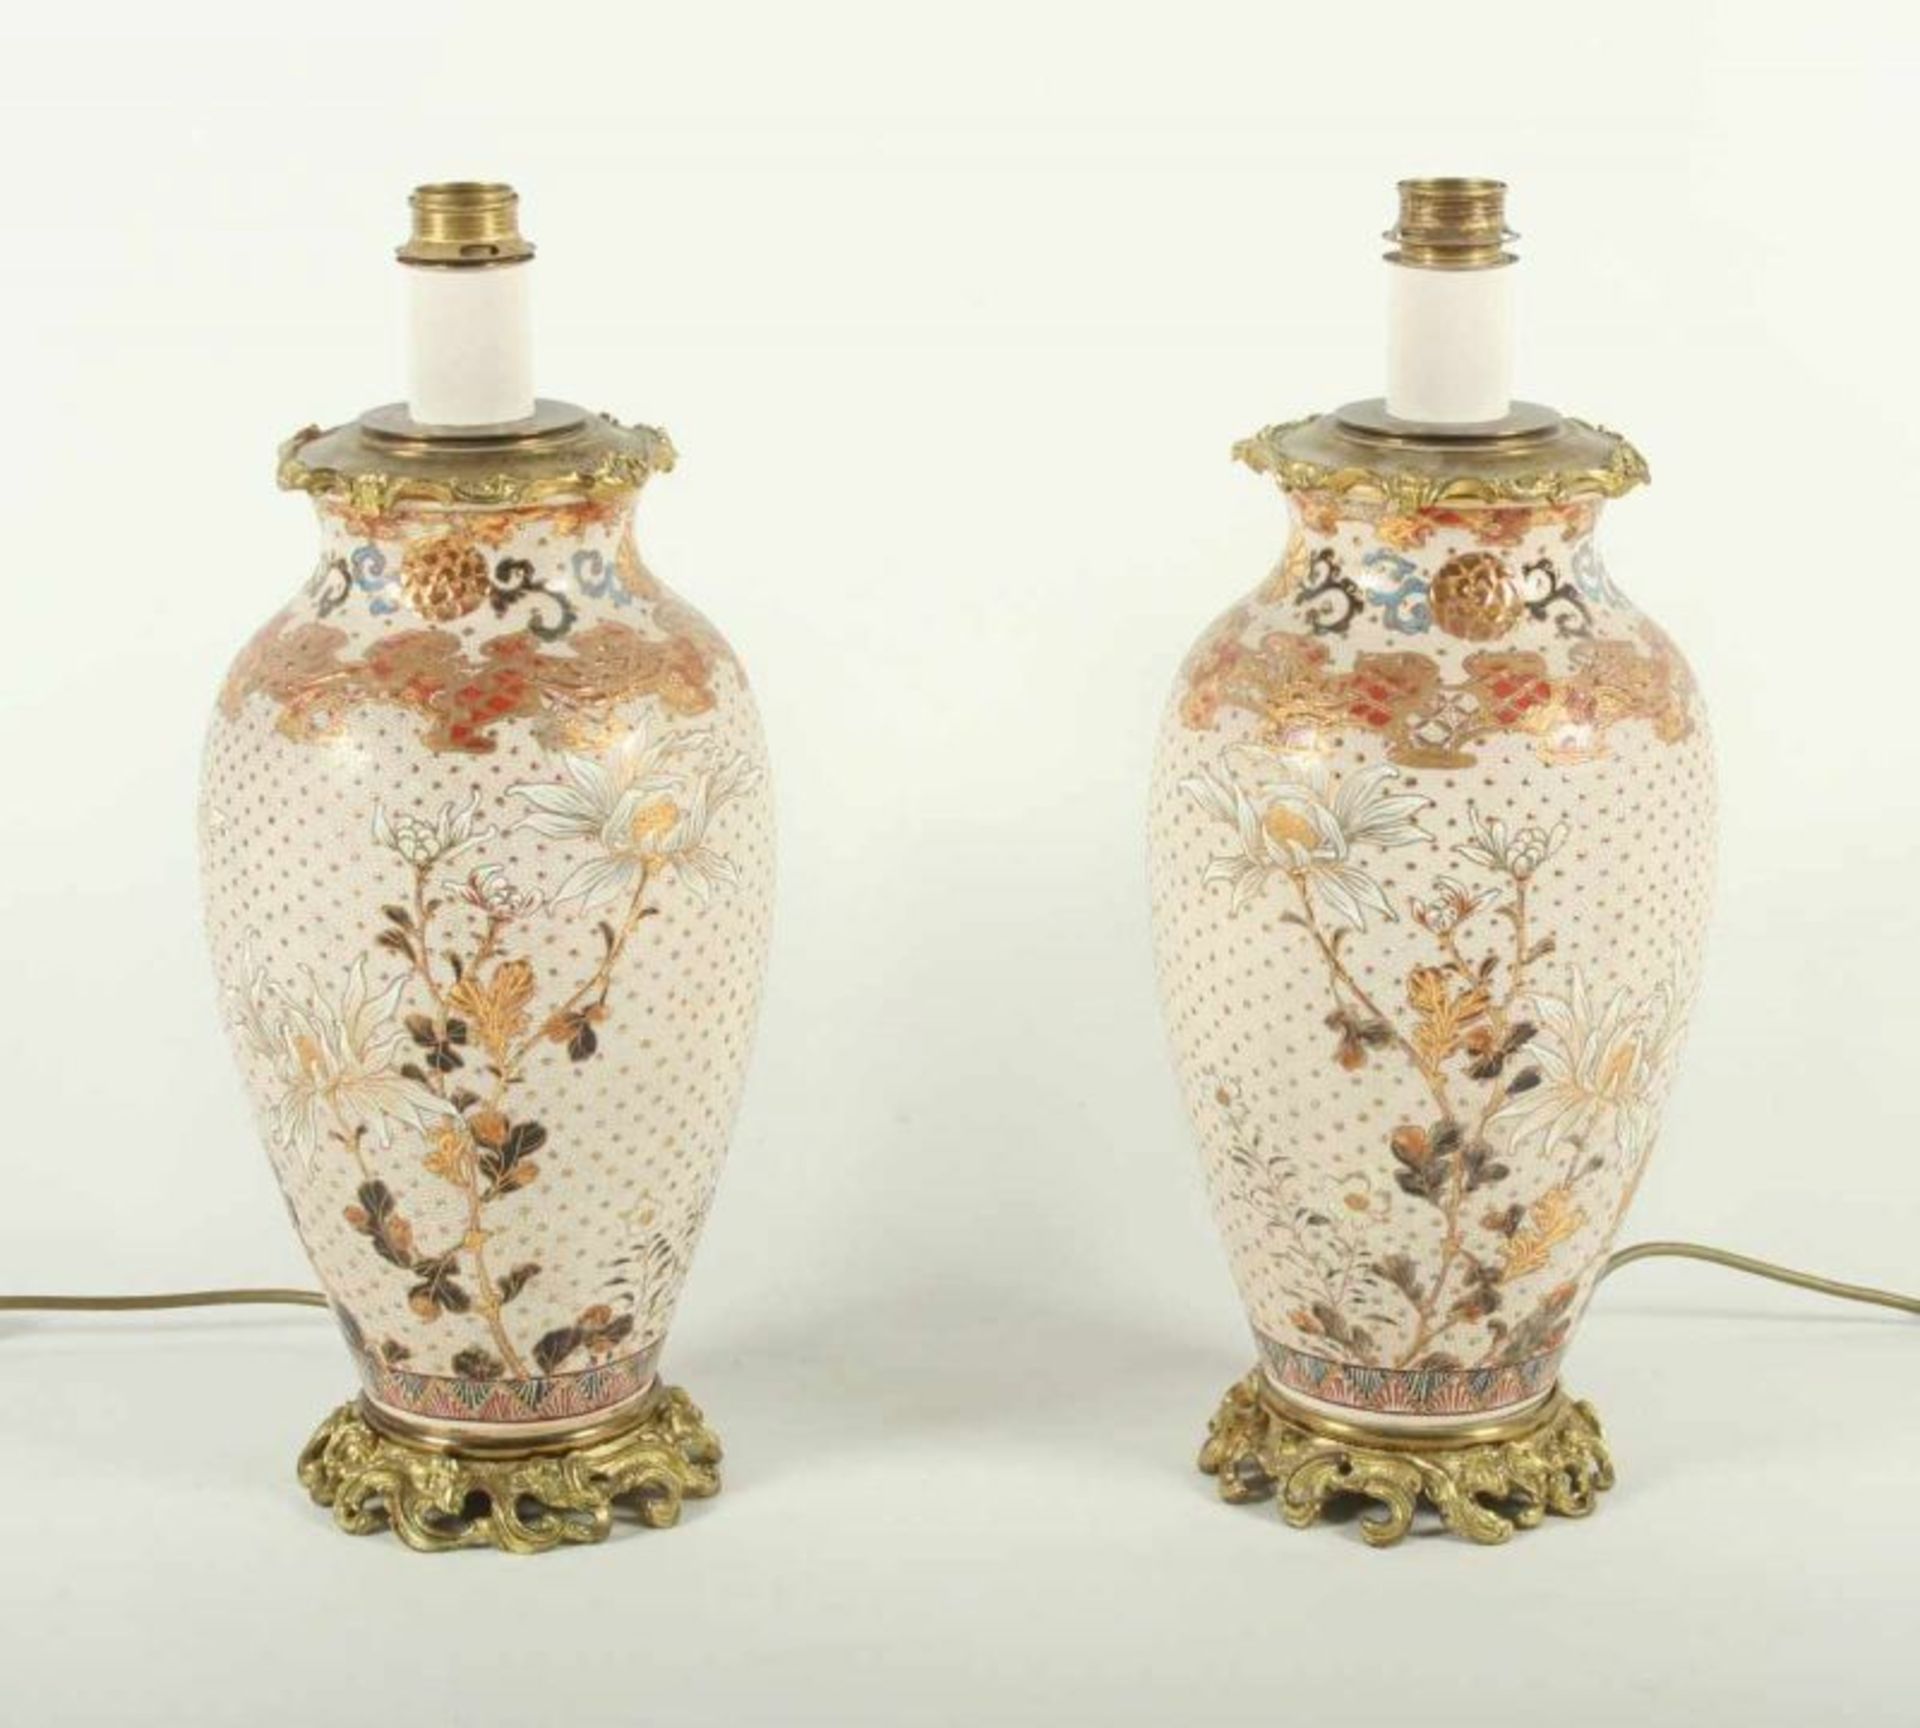 PAAR SATSUMA-VASEN, heller Scherben, in teils pastös aufgetragenen Farben und Gold dekoriert, mit - Image 2 of 2